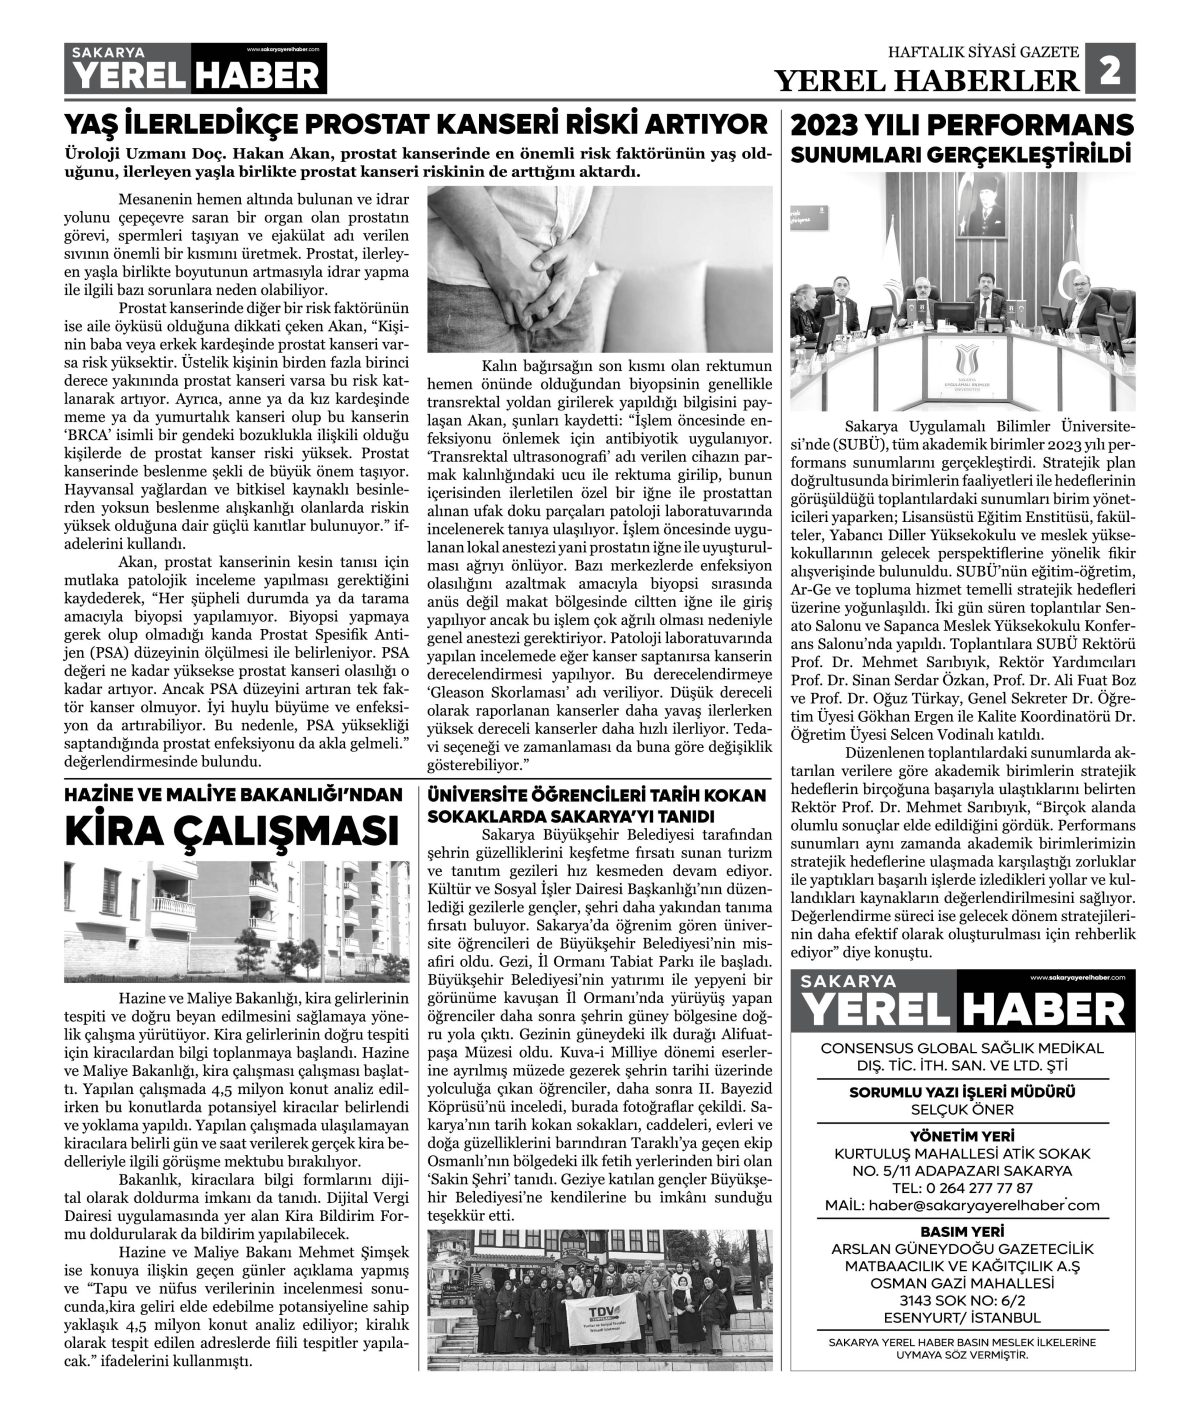 Sakarya Yerel Haber Gazetesi 43. Sayısı Çıktı